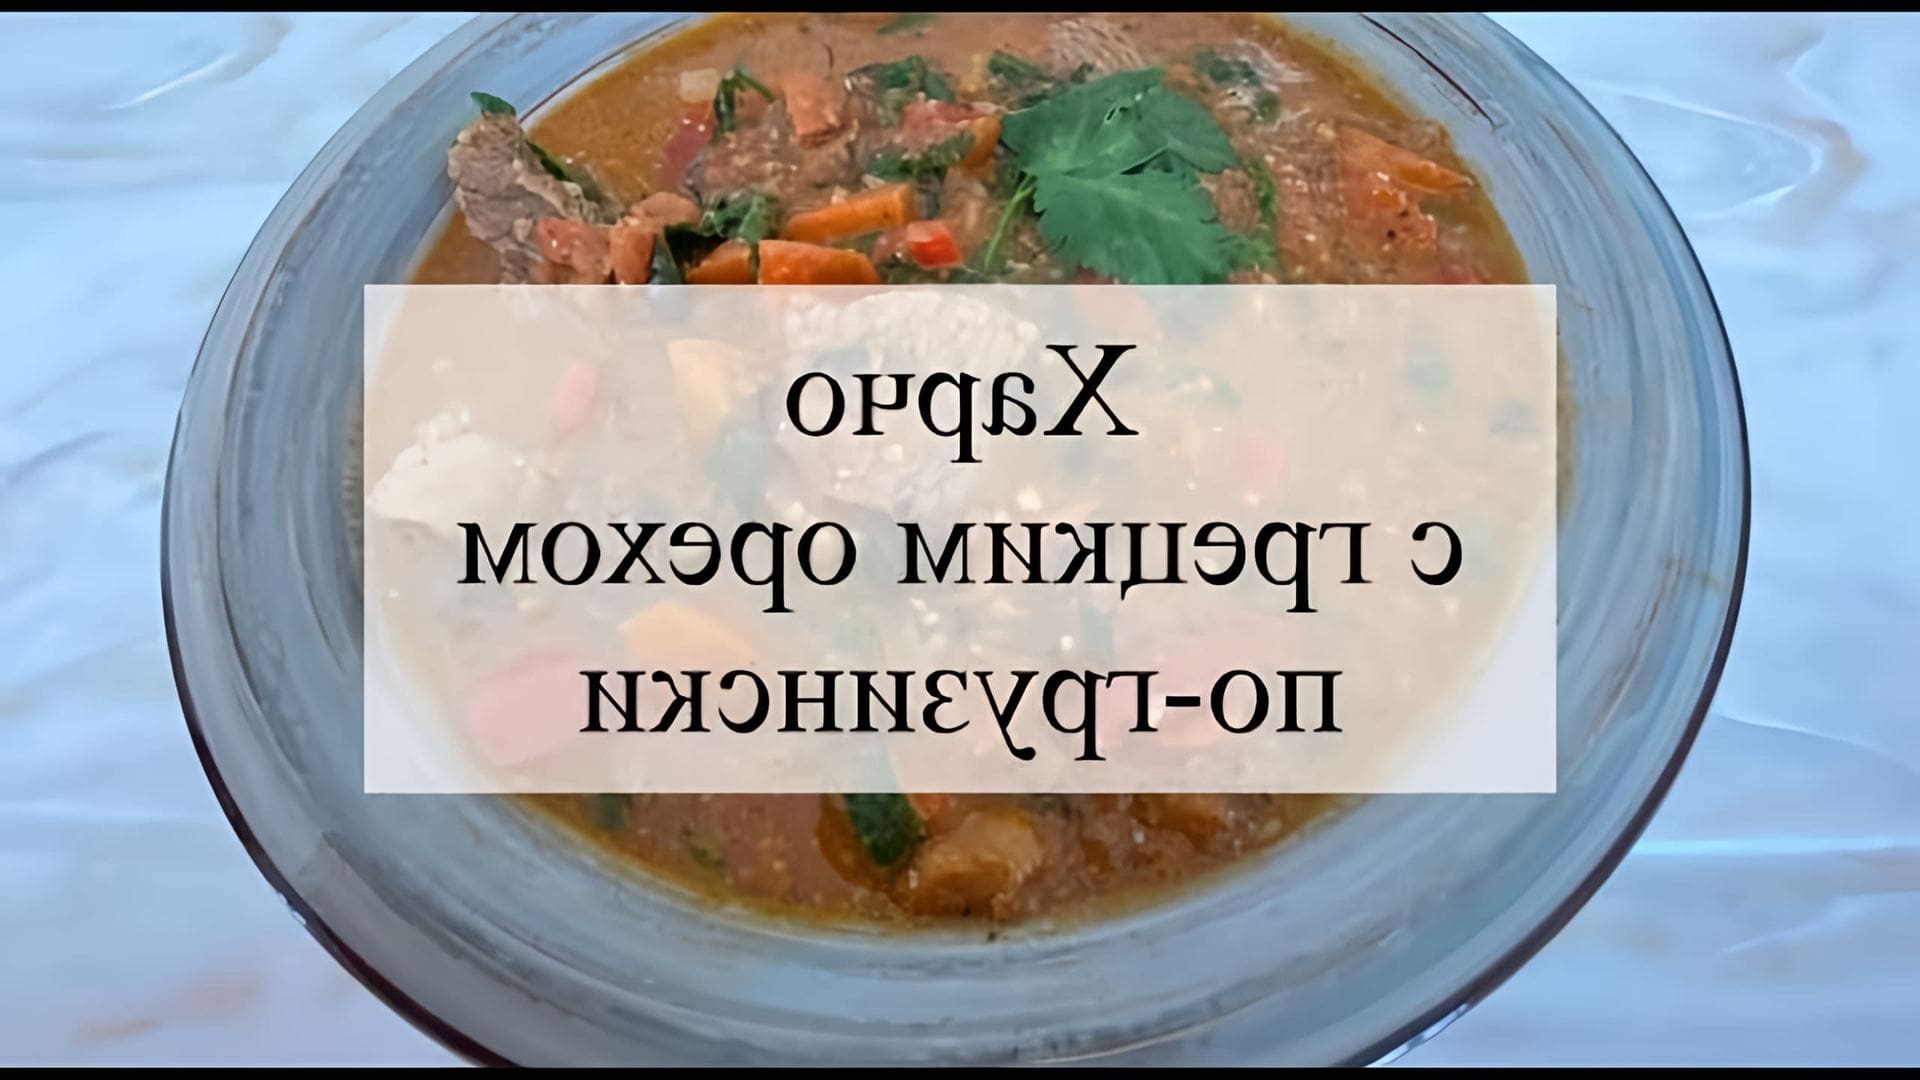 Сегодня готовим суп харчо по-грузински с грецкими орехами! Для его приготовления Вам потребуется (количество... 